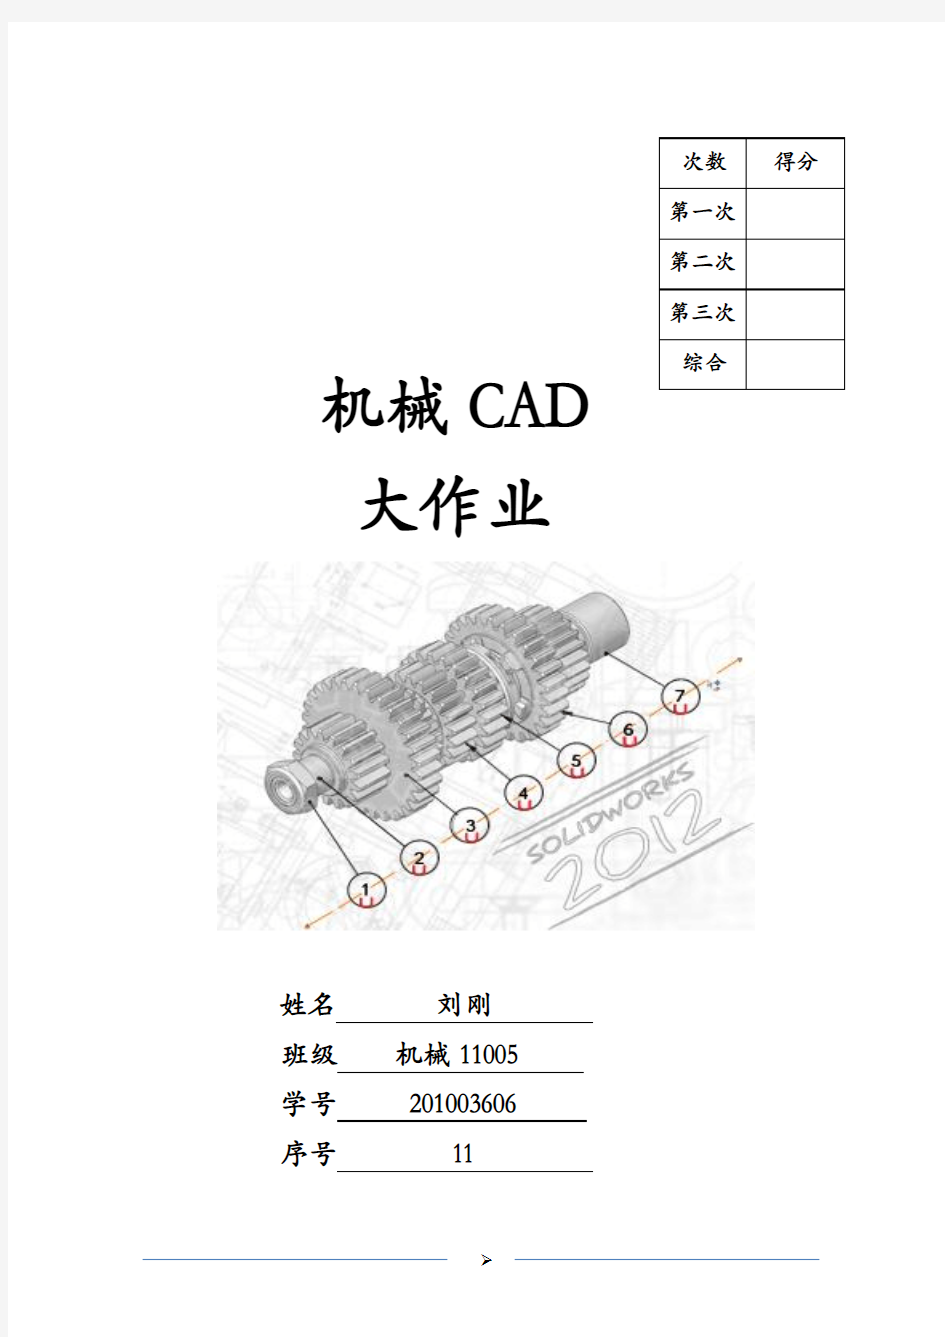 机械CAD三次大作业